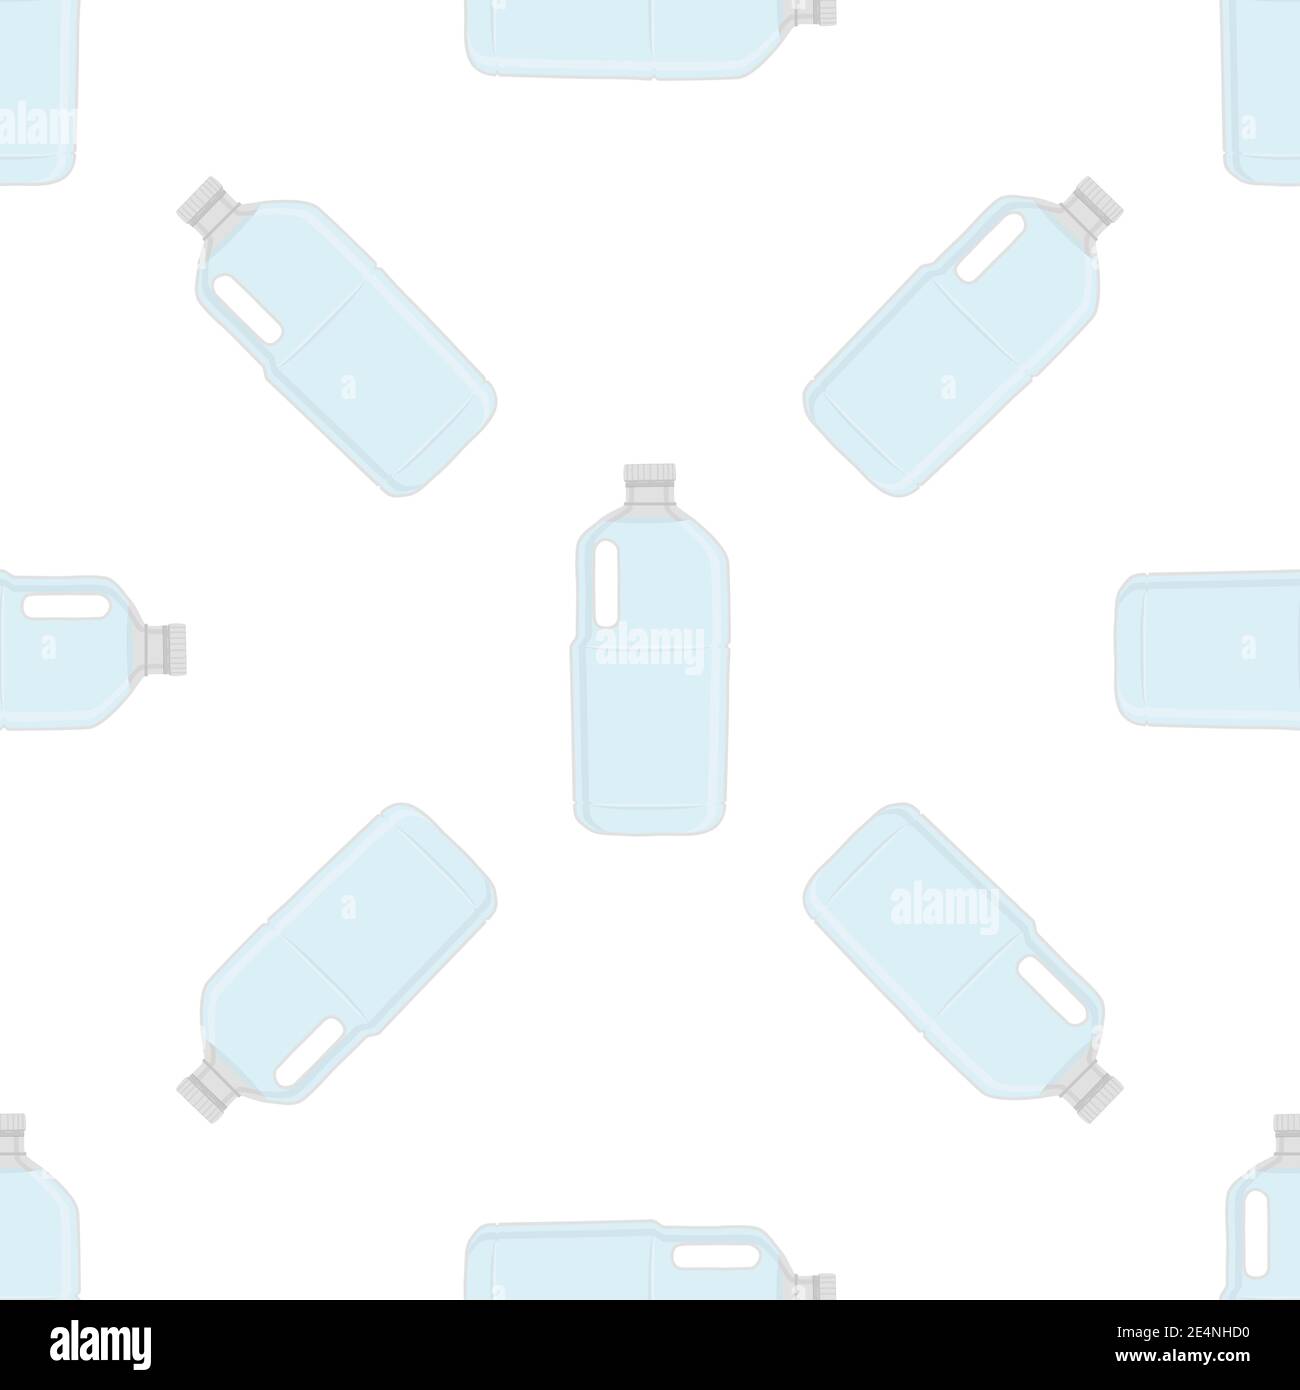 Illustrazione sul set di temi bottiglie di plastica di tipo identico per acqua potabile. Modello d'acqua composto da accessori per la cucina di raccolta, bottiglia di plastica Illustrazione Vettoriale